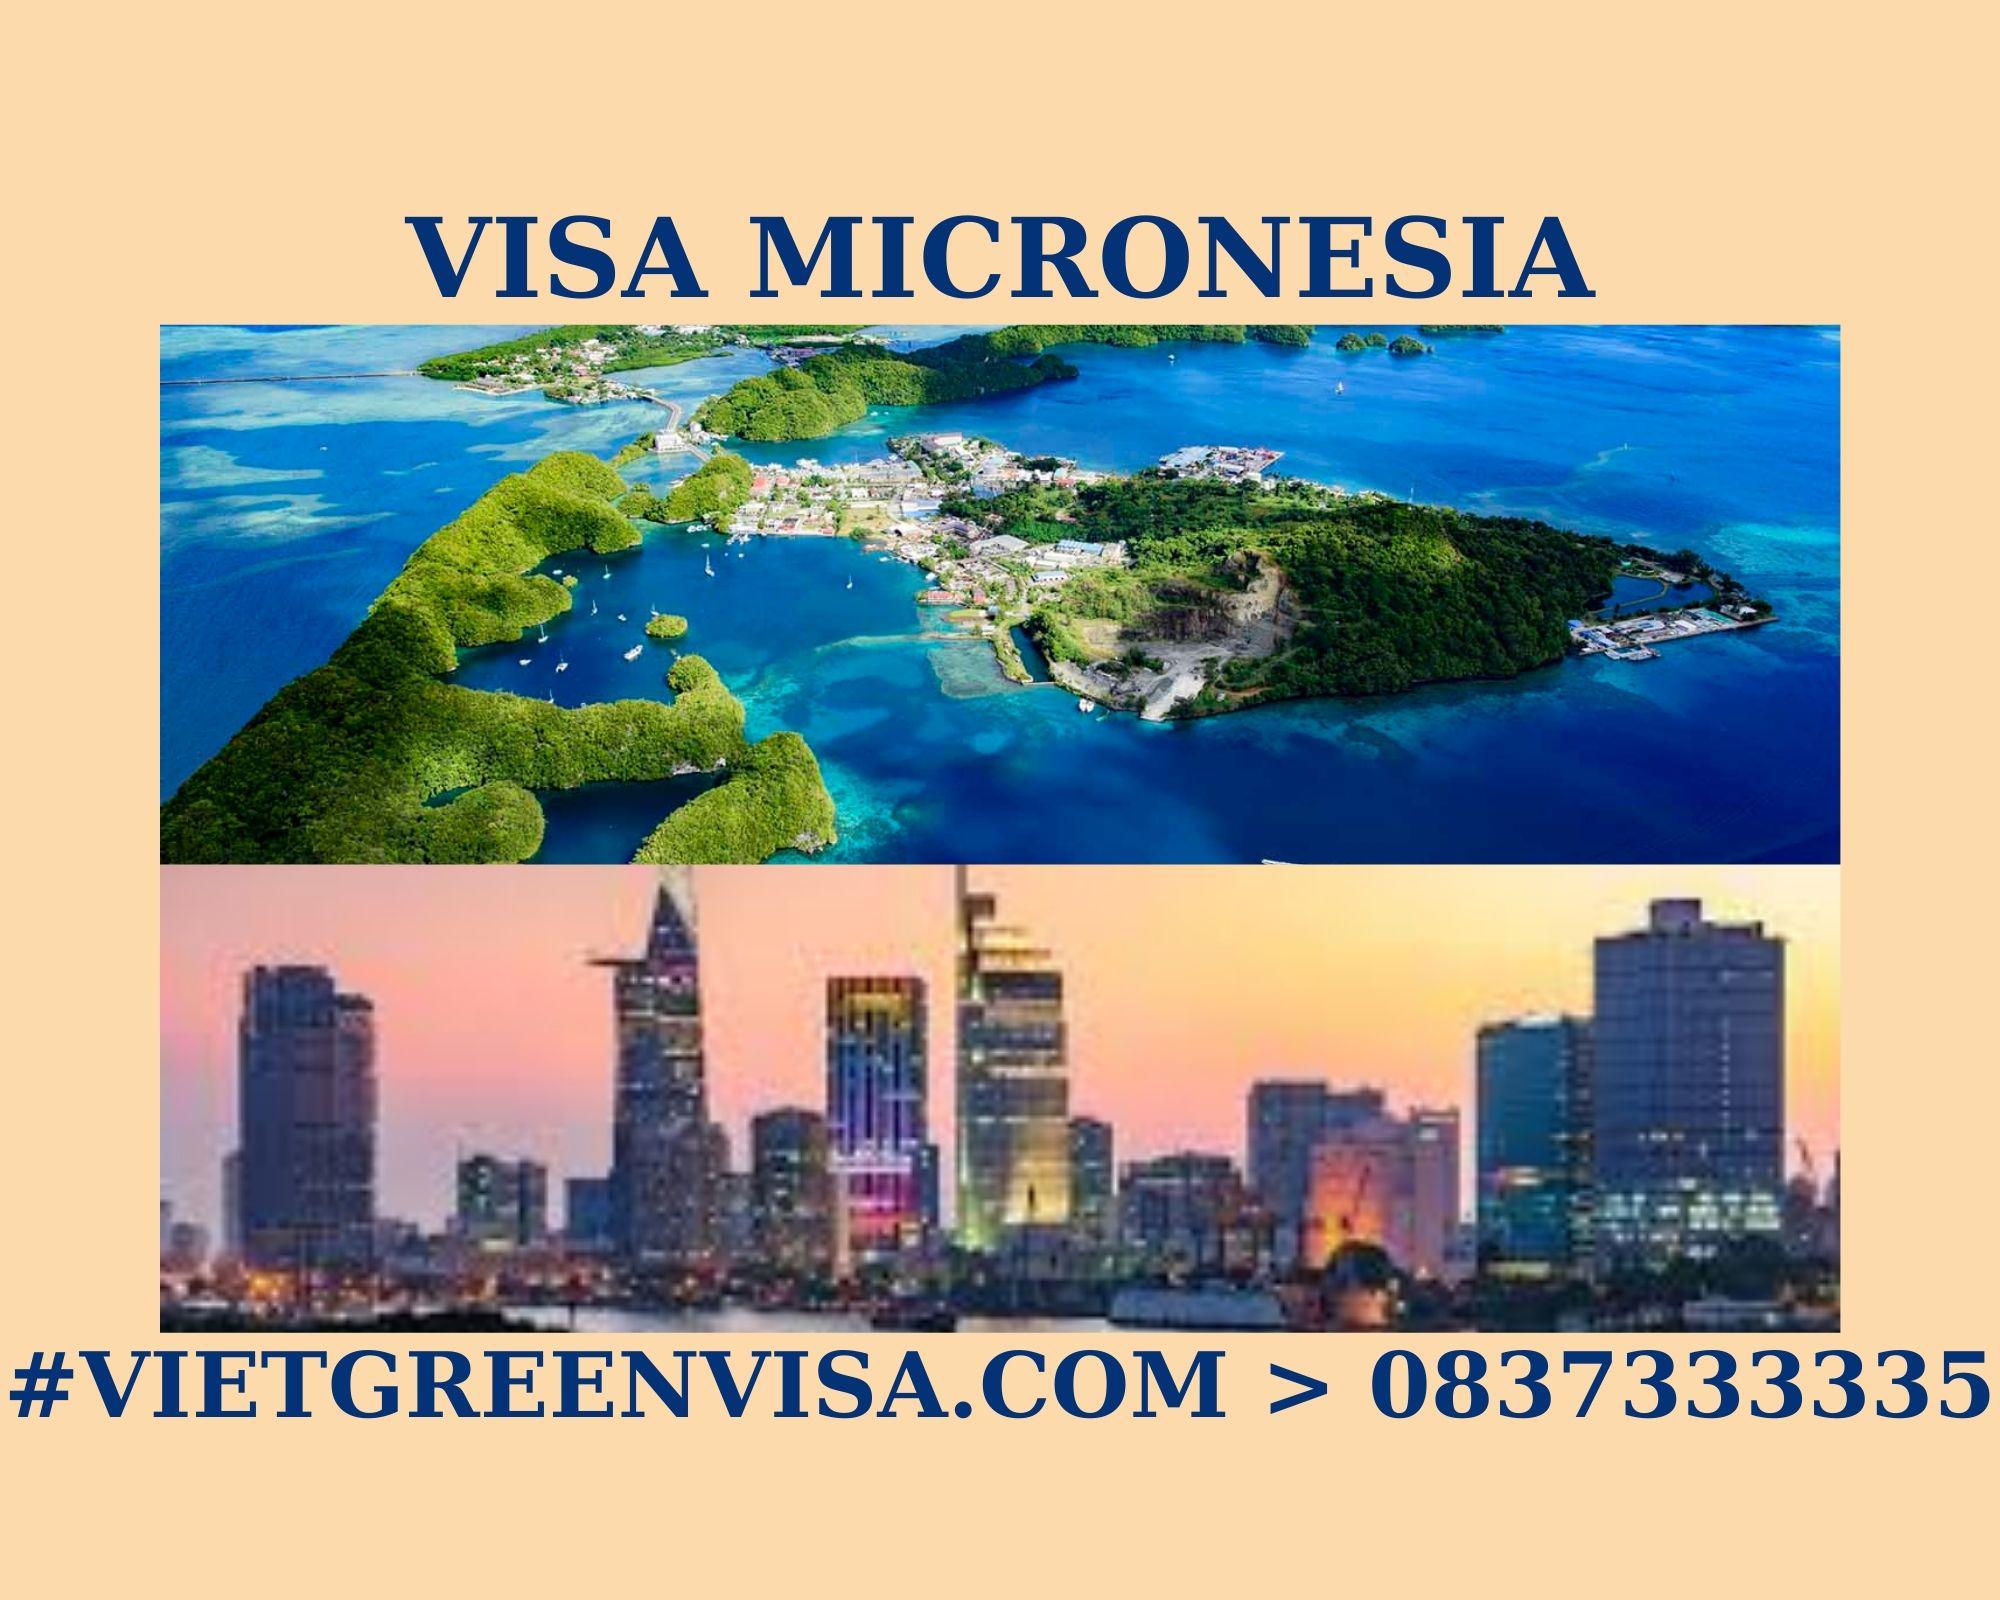 Bí quyết xin Visa Micronesia công tác nhanh gọn, bao đậu